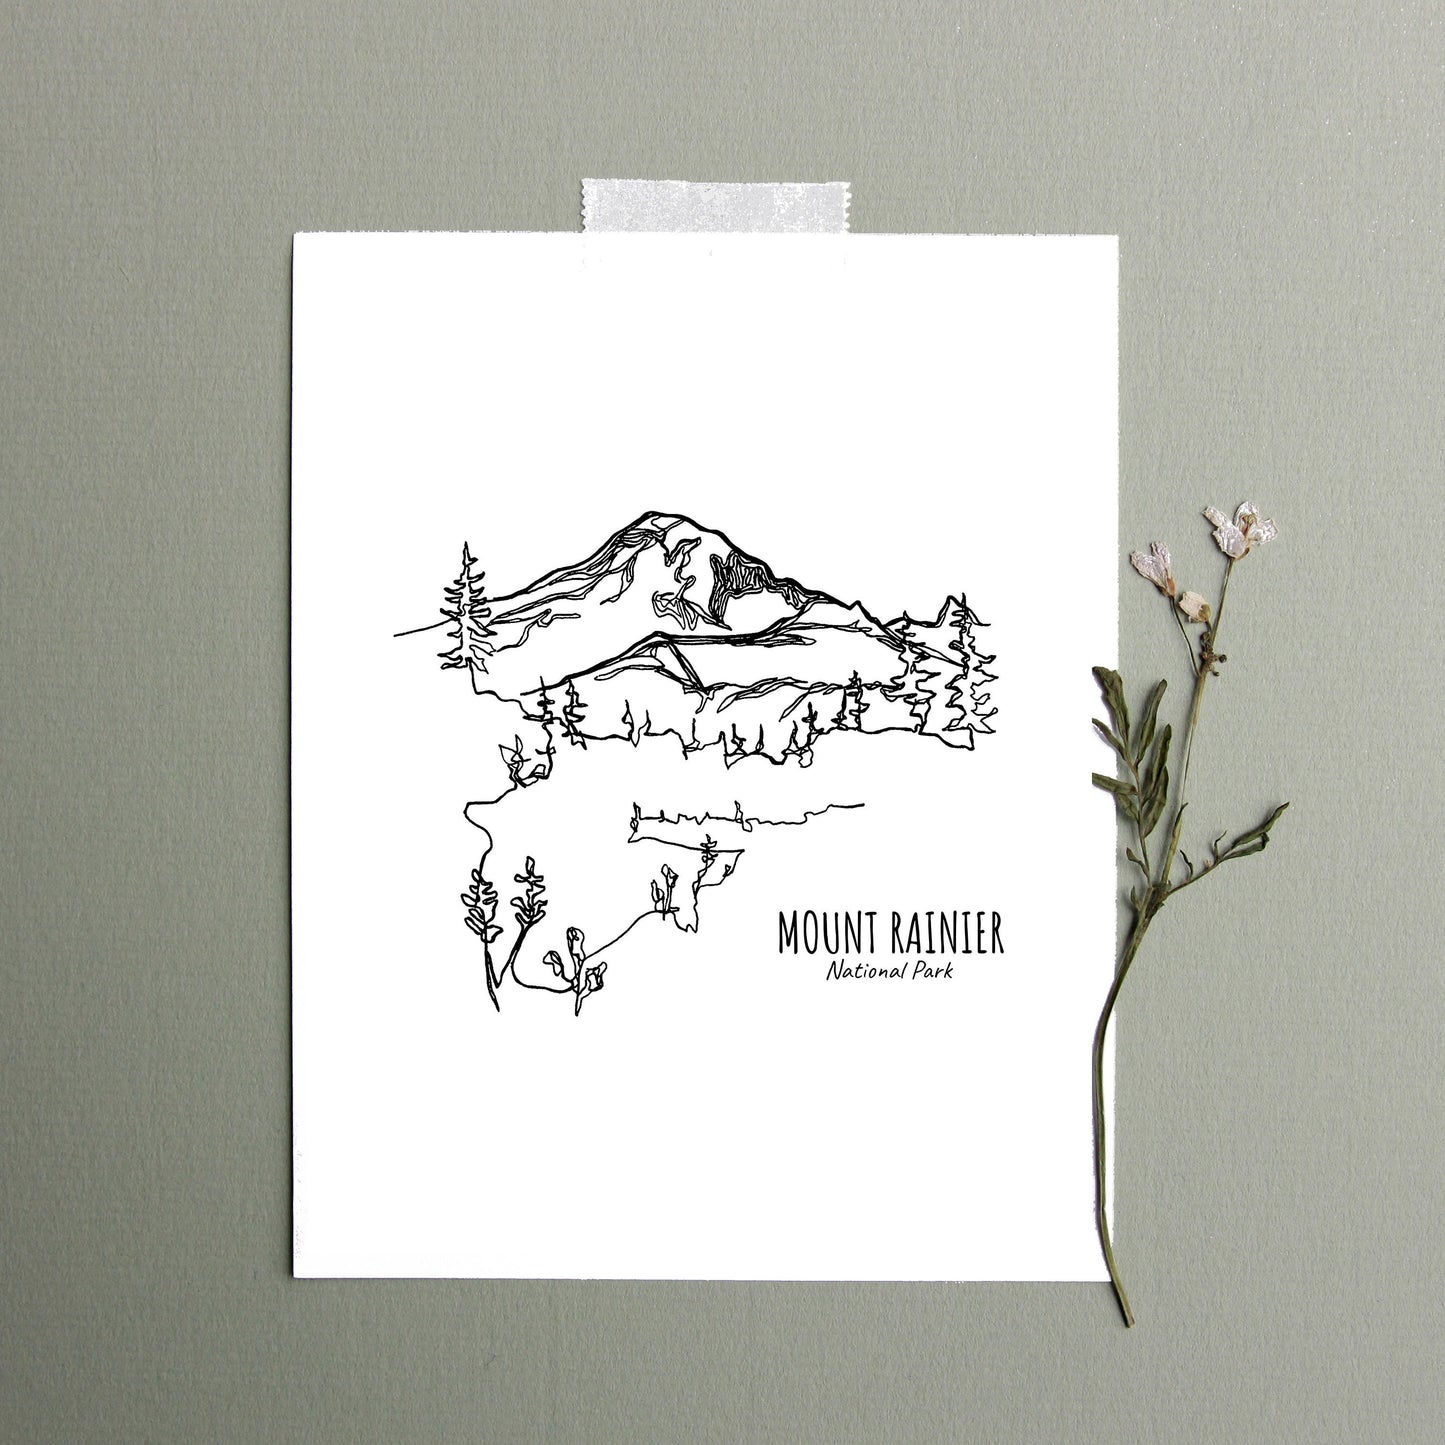 Mount Rainier National Park, Washington Continuous Line Print